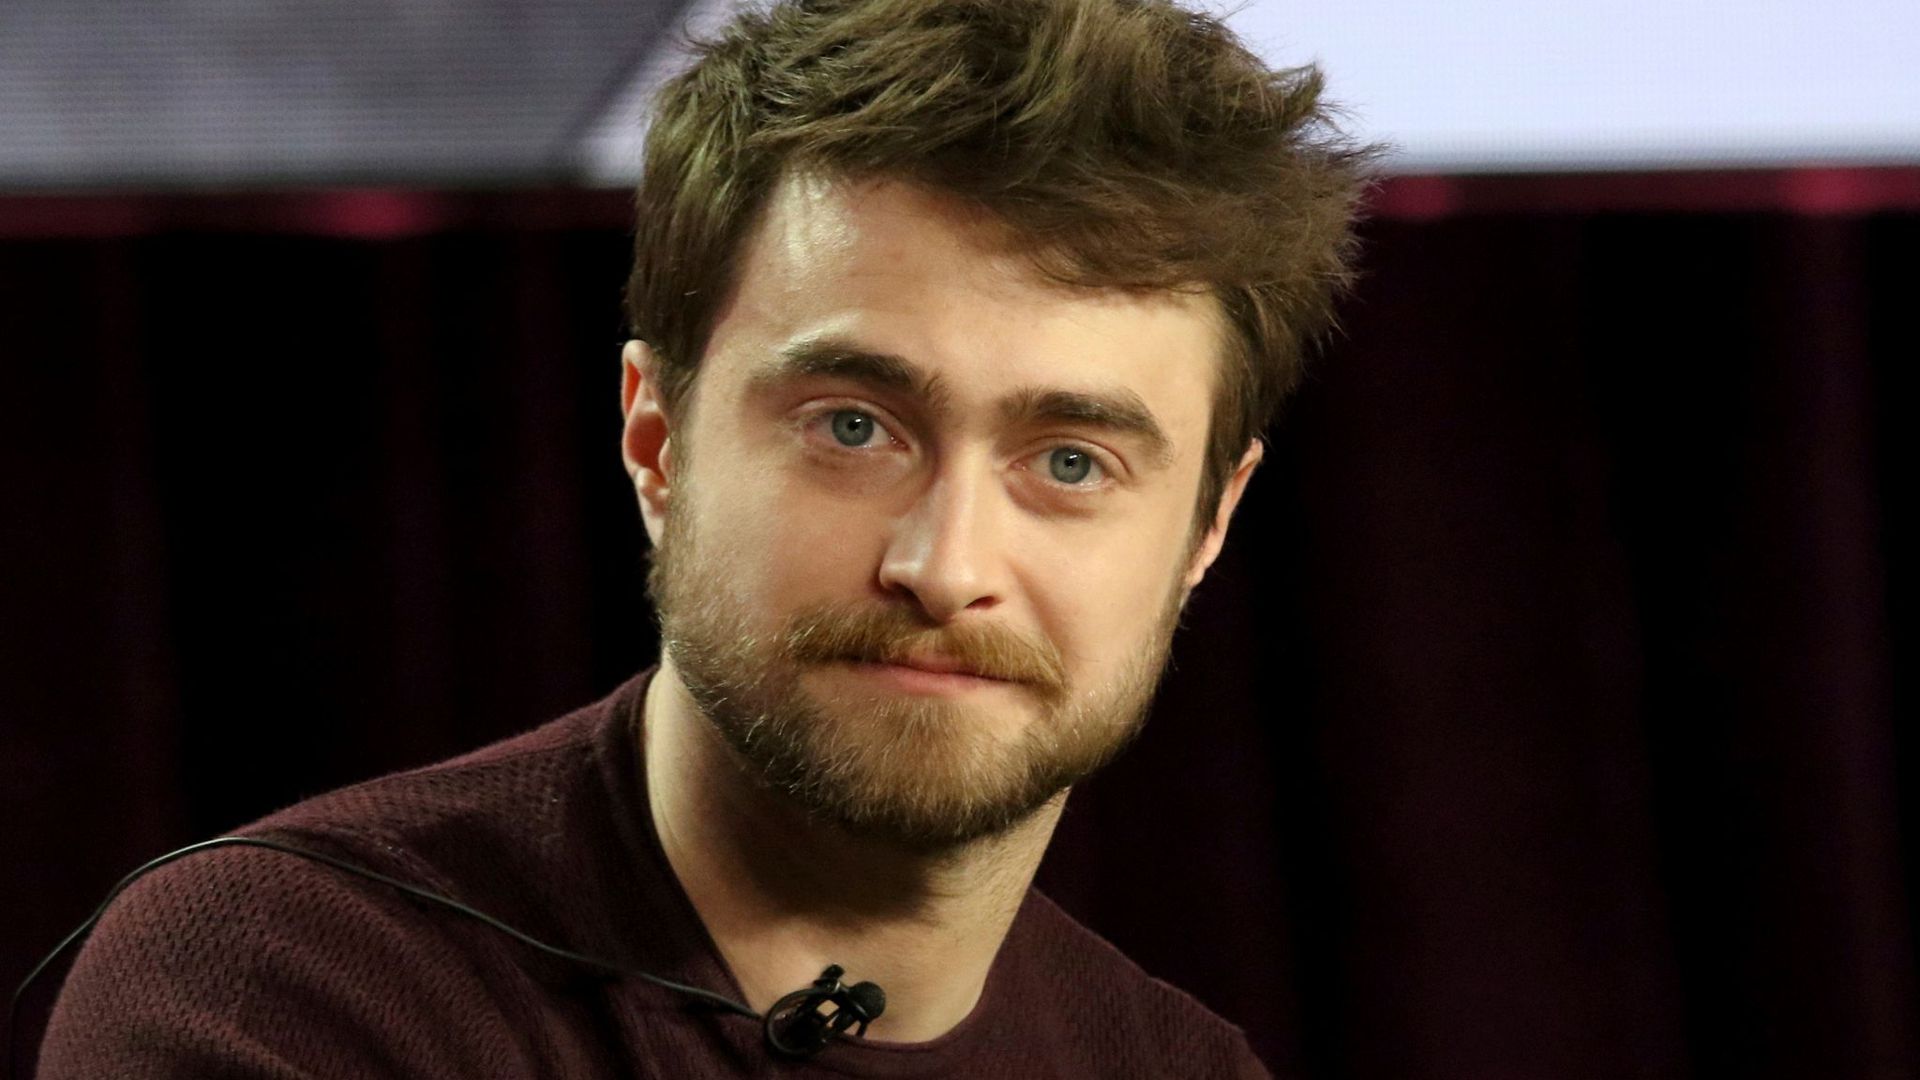 Daniel Radcliffe hält sich bei Sozialen Medien zurück.